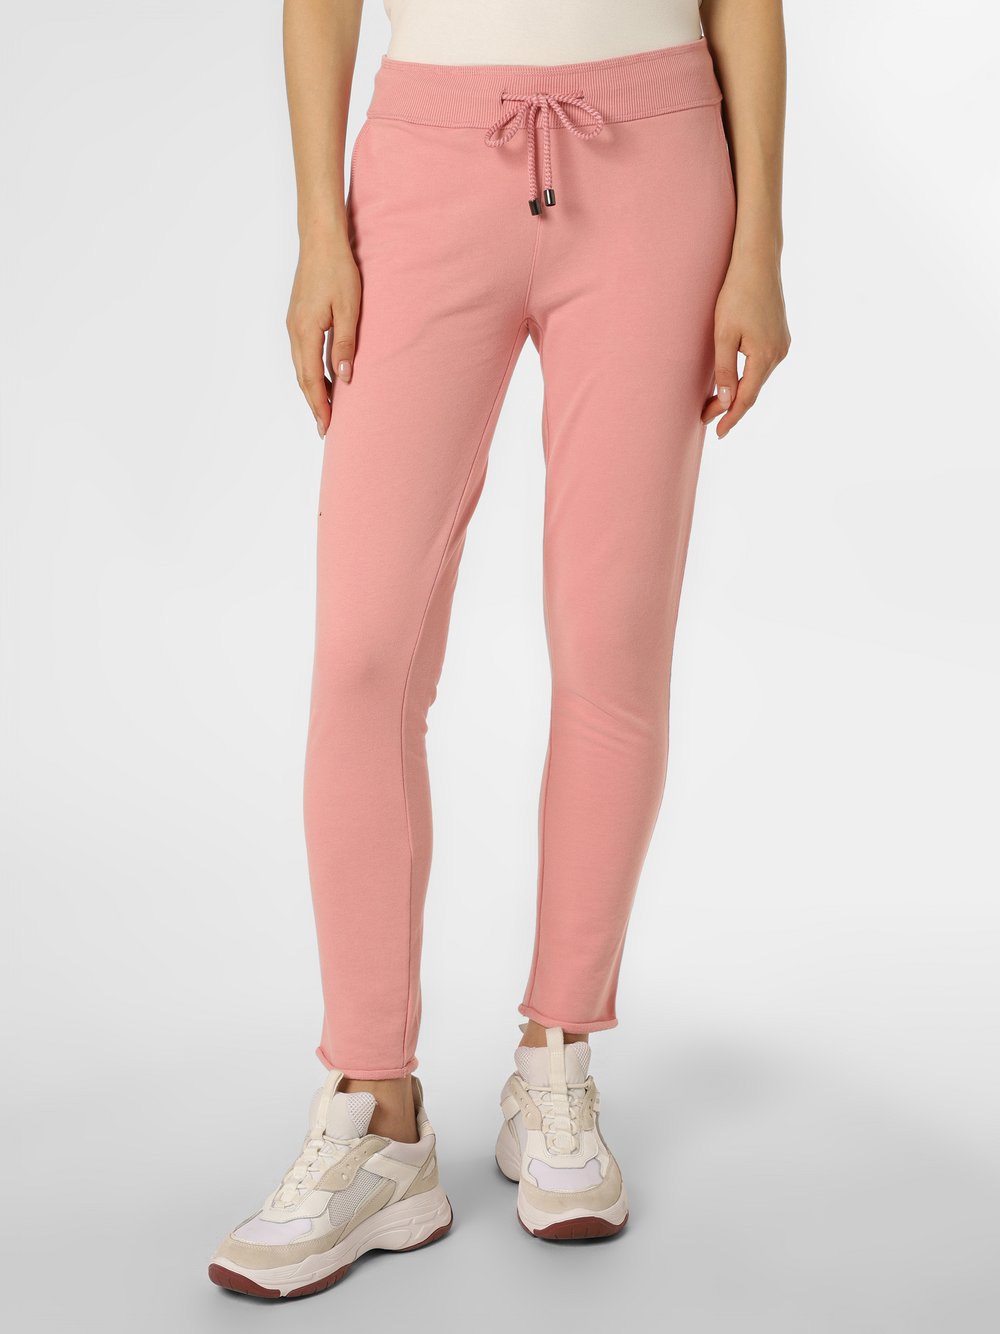 Juvia - Damskie spodnie dresowe – Smilla, różowy